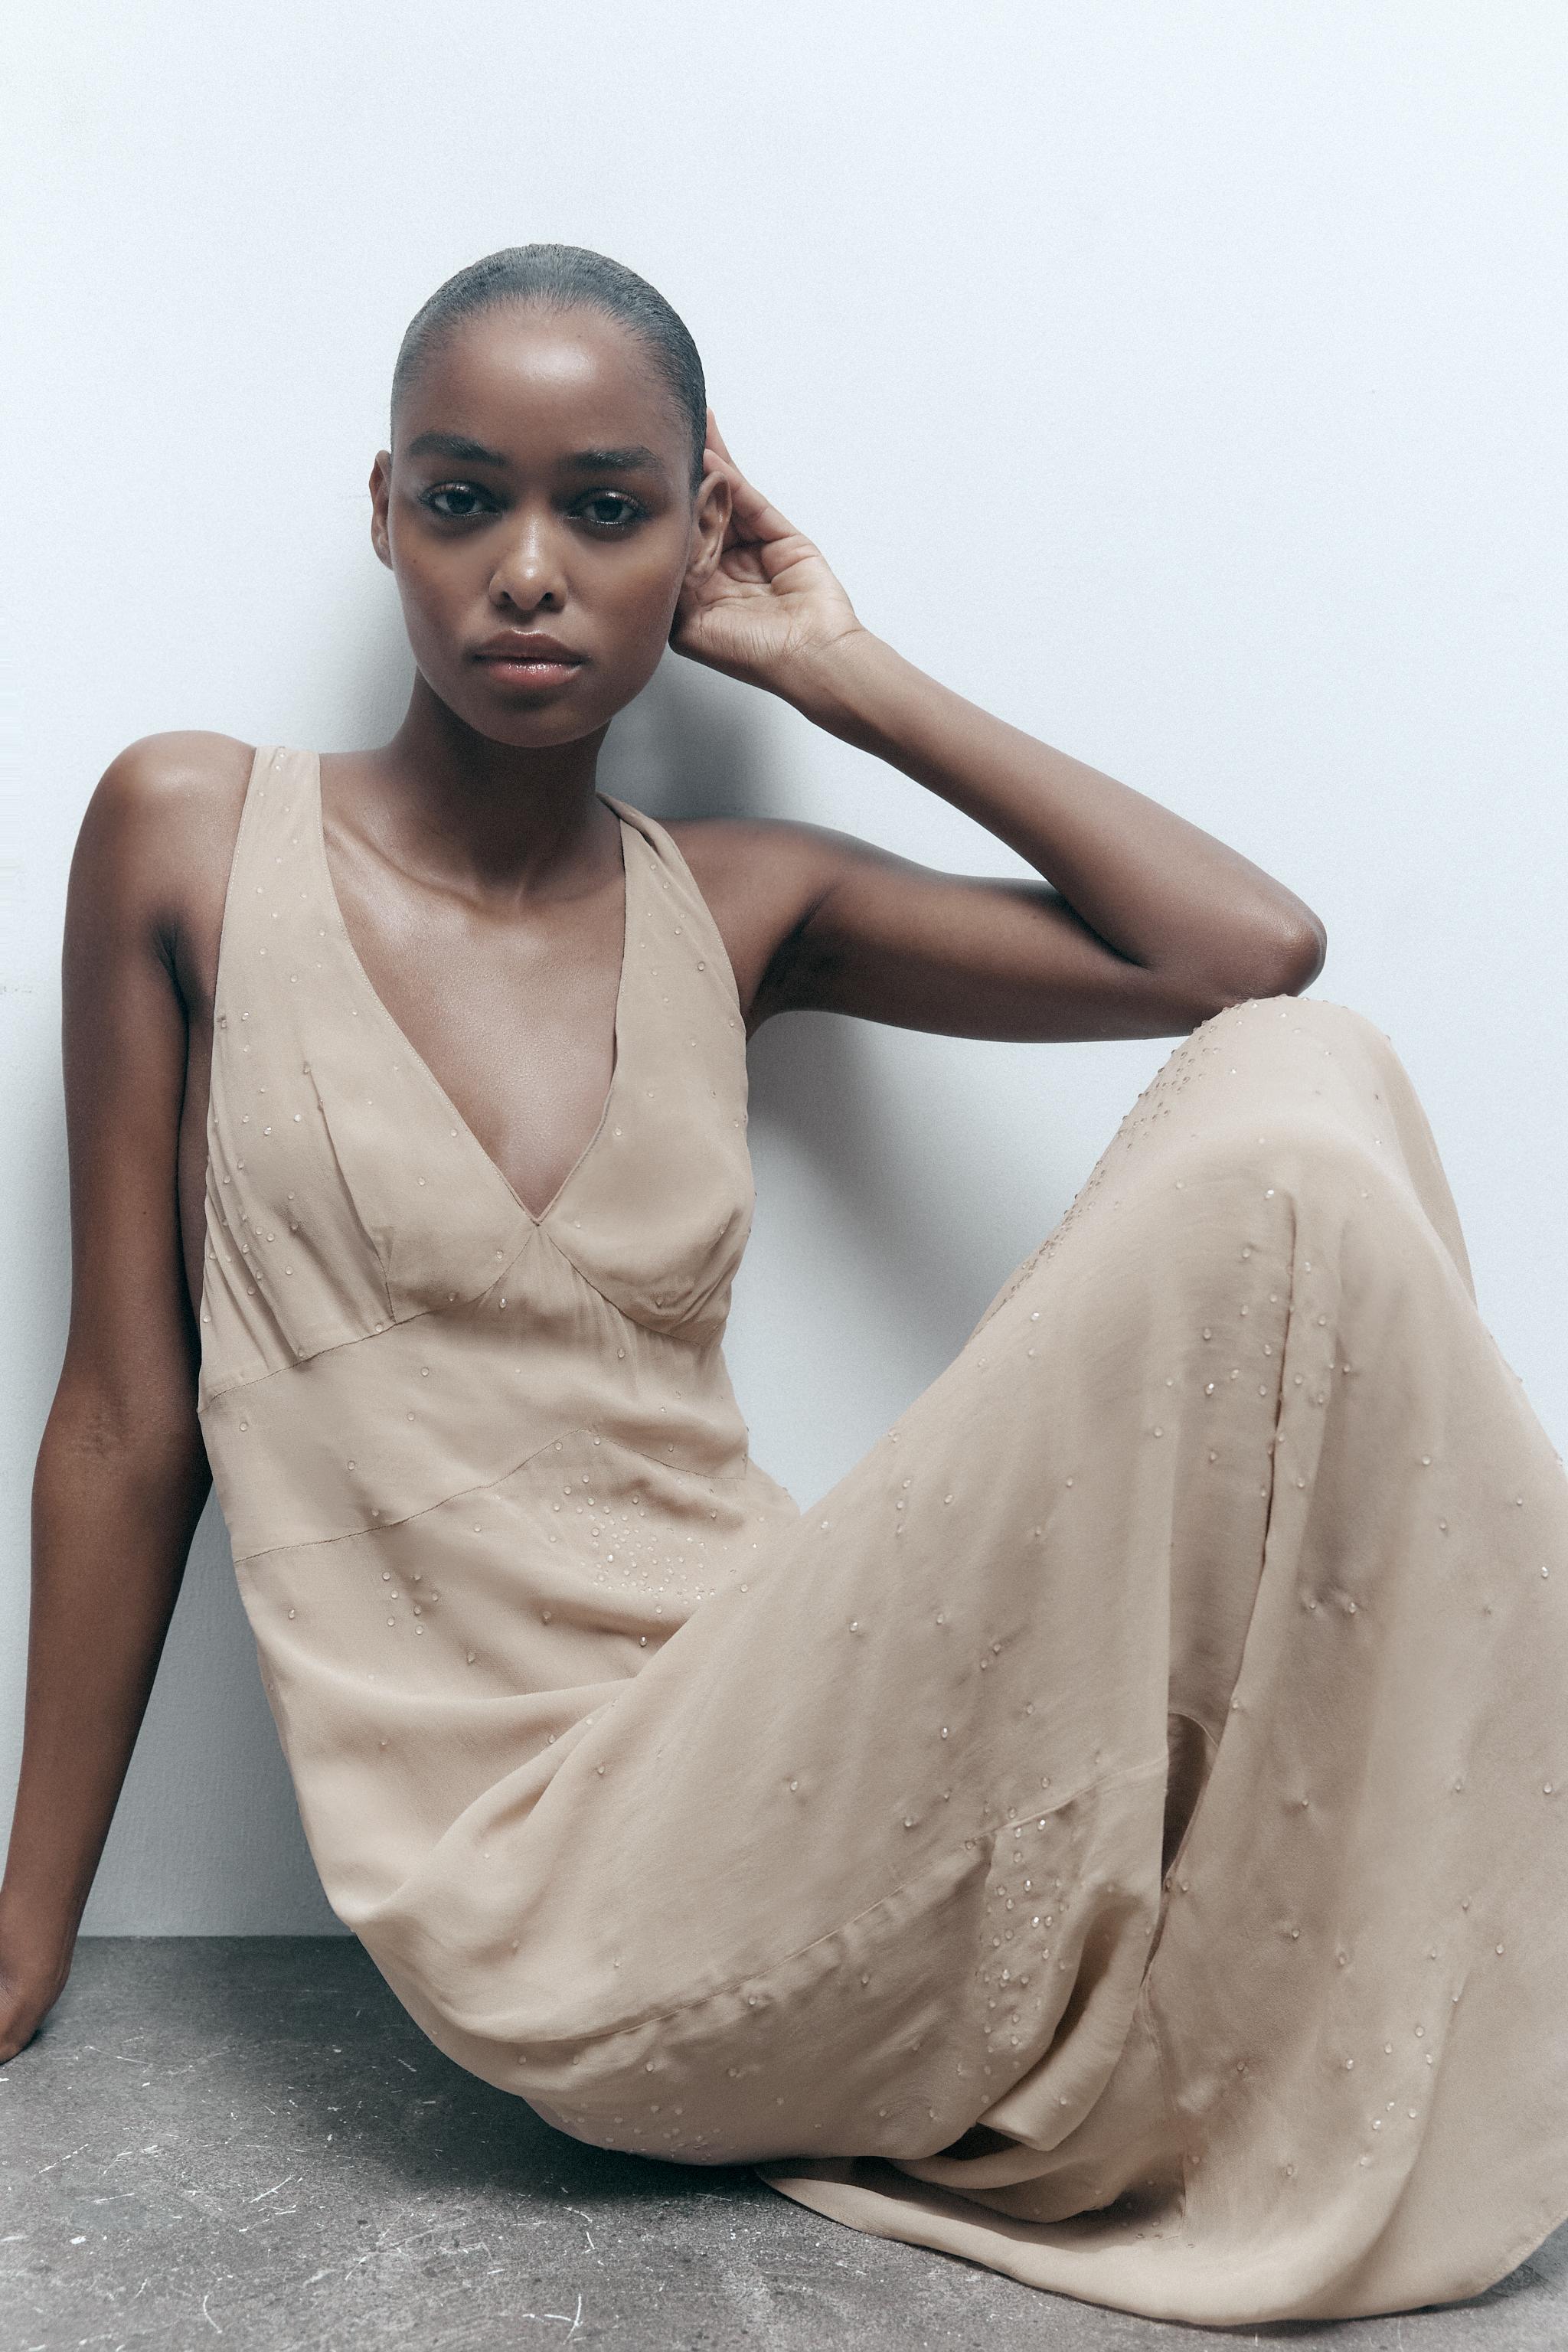 Slip Dresses - Buy Slip Dresses Online in South Africa